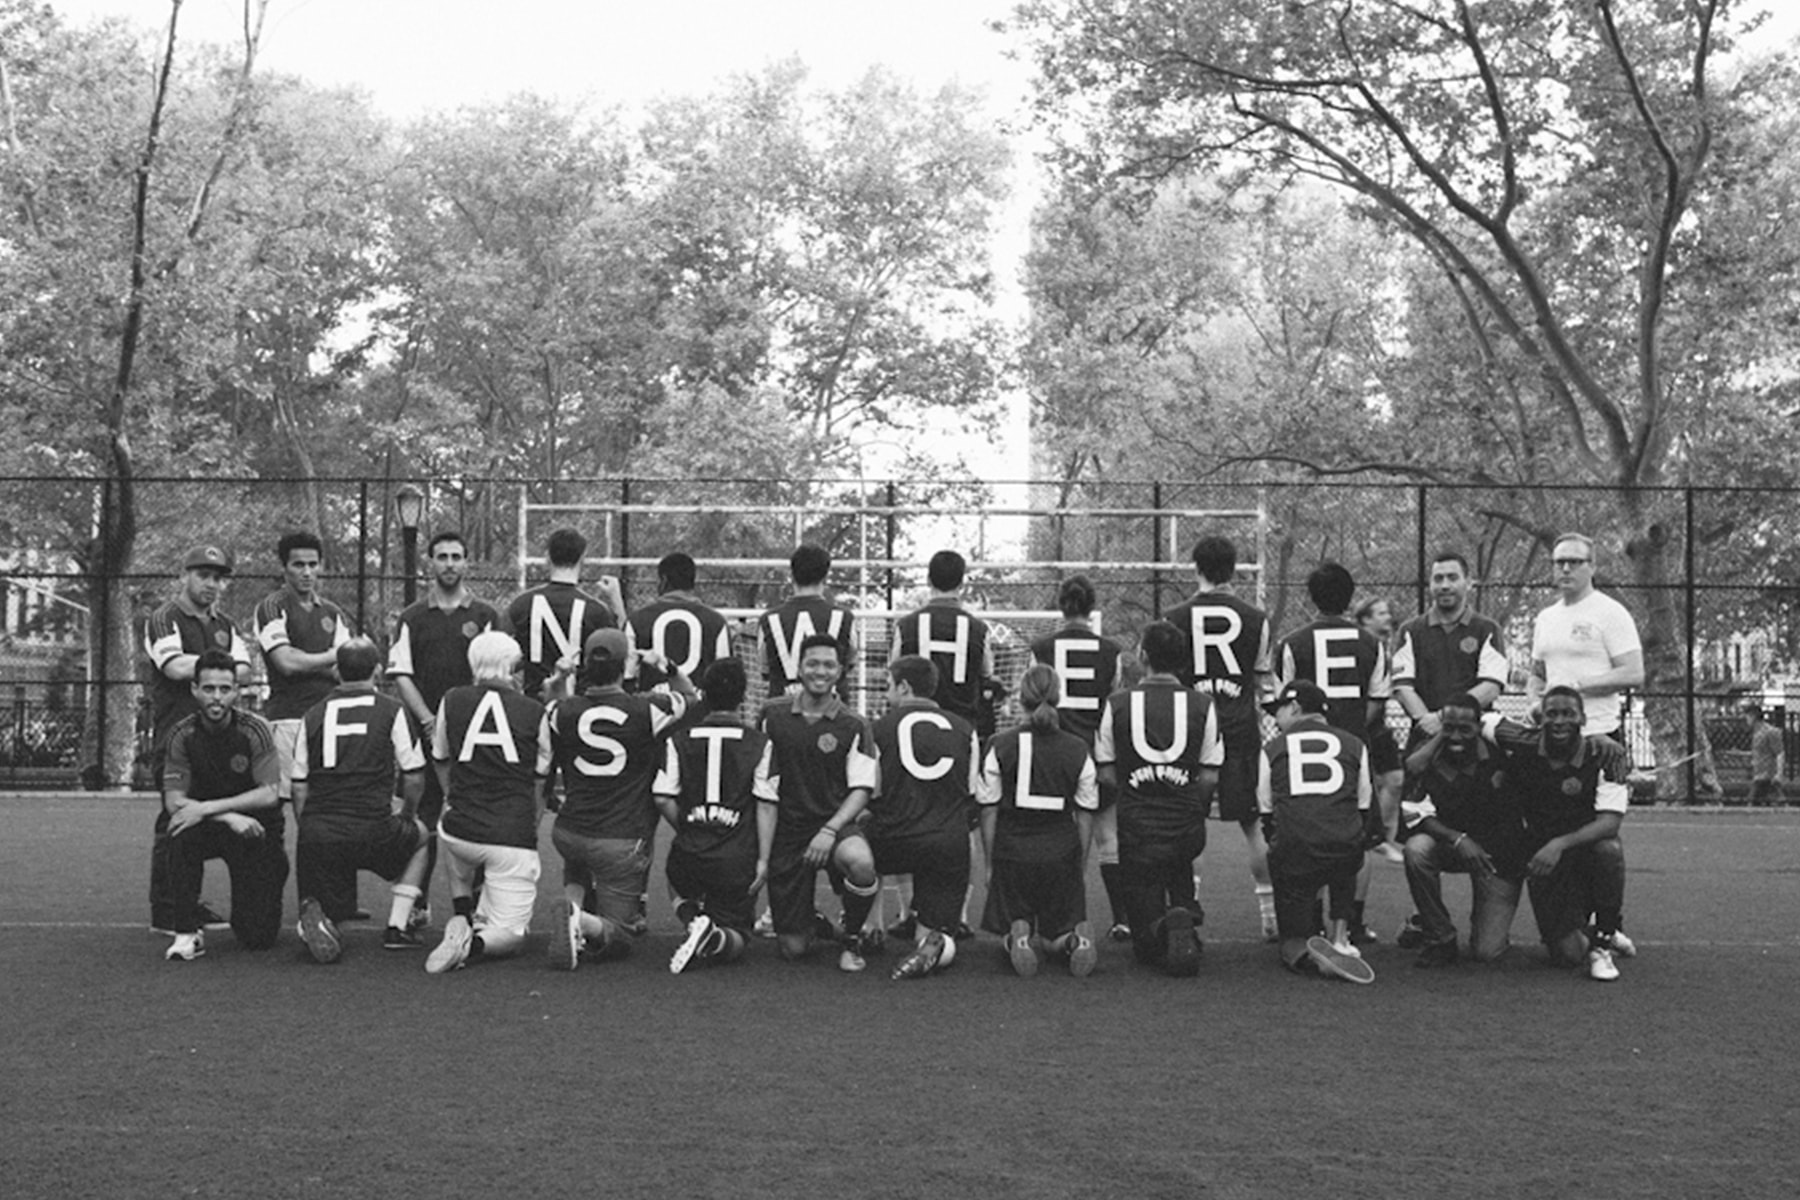 ストリートで話題のNY発サッカークラブ Nowhere FC と東京の CROSS THE BORDER がコラボレーションを発表 ノーウェア HYPEBEAST ハイプビースト クロス ザ ボーダー